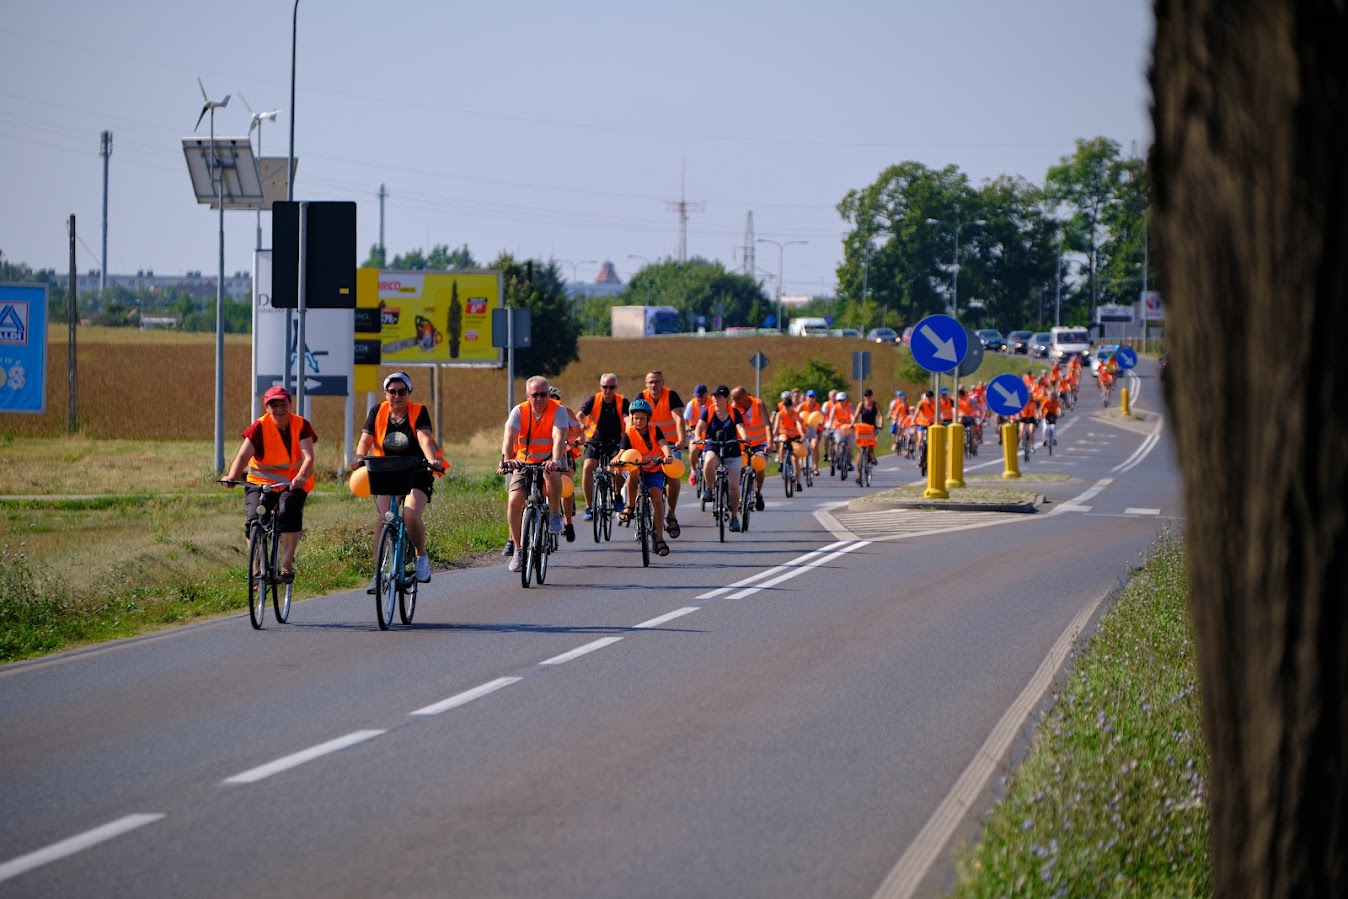 uczestnicy rajdu rowerowego jadą drogą publiczną, wszyscy mają założone pomarańczowe kamizelki odblaskowe z napisem Odjazdowy Bibliotekarz